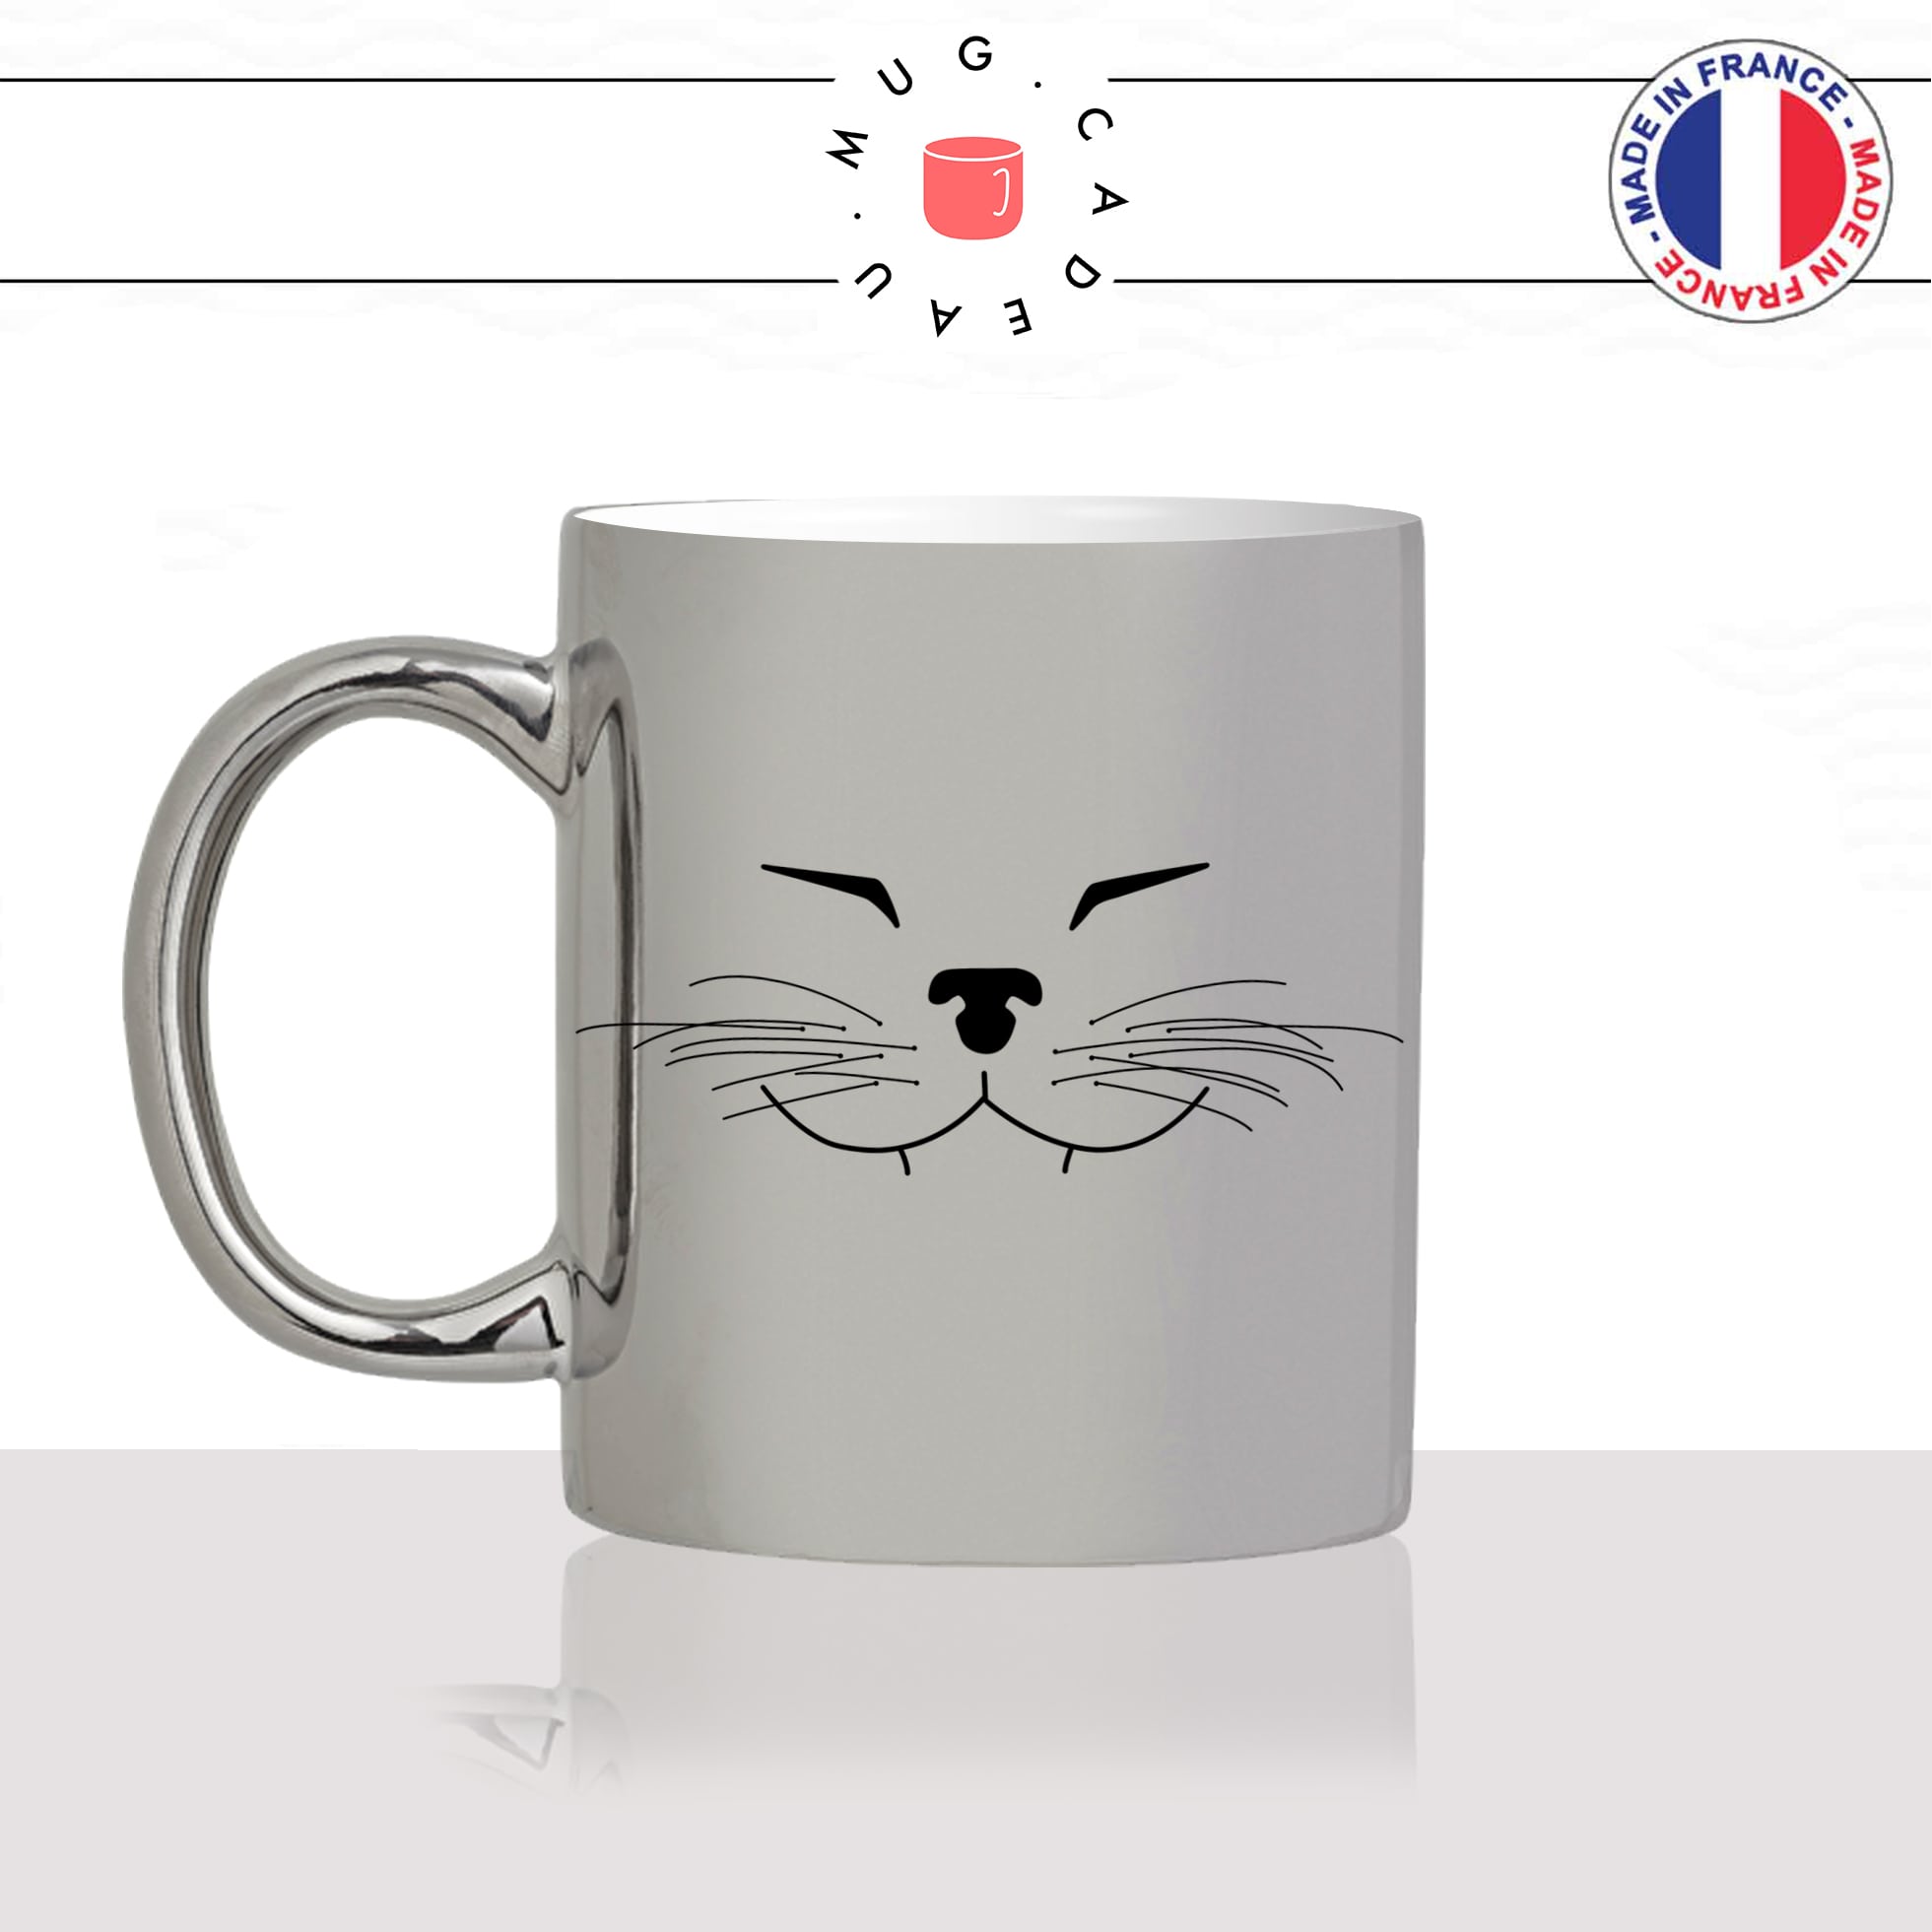 mug-tasse-argenté-silver-tete-de-chat-content-moustaches-mignon-animal-chaton-noir-fun-café-thé-idée-cadeau-original-personnalisé-min